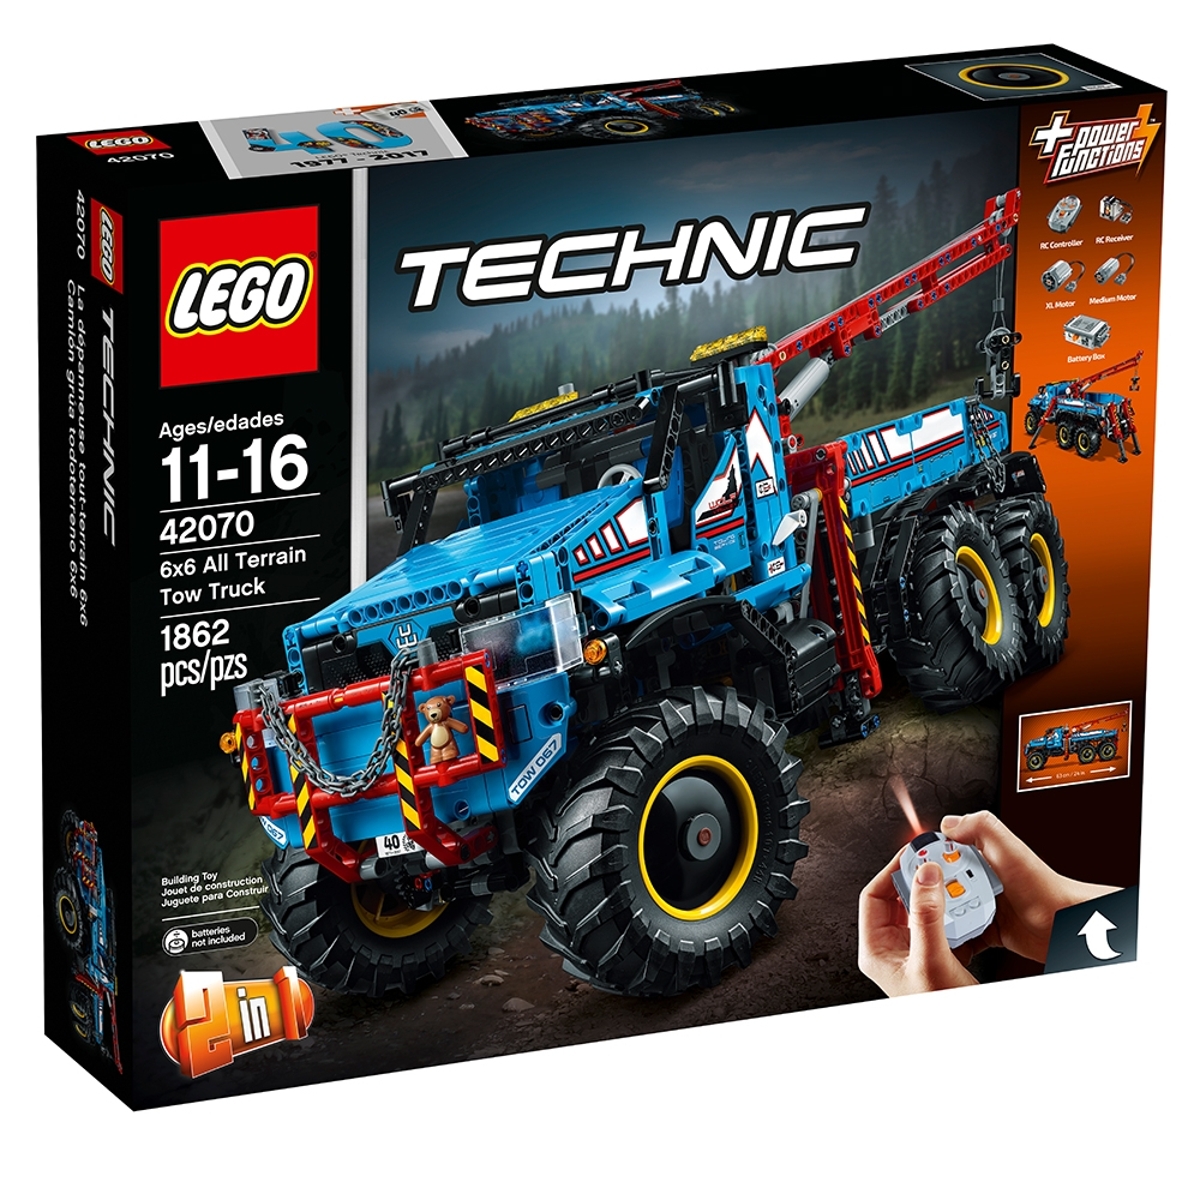 lego 42070 6x6 all terrain tow truck